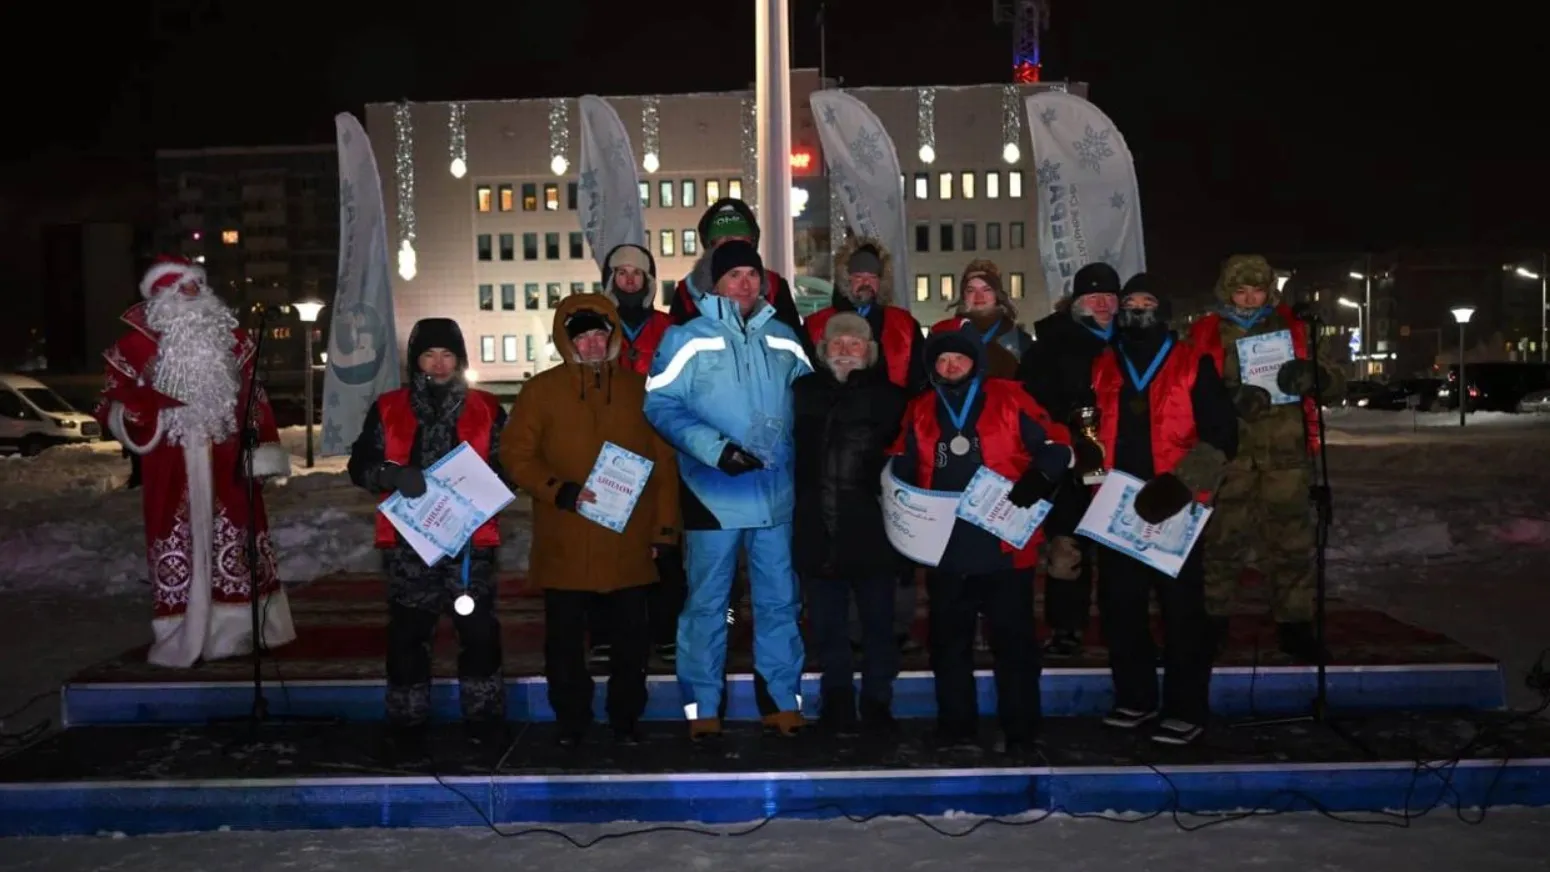 Победители фестиваля ледовых скульптур в Новом Уренгое. Фото: t.me/VORONOV89